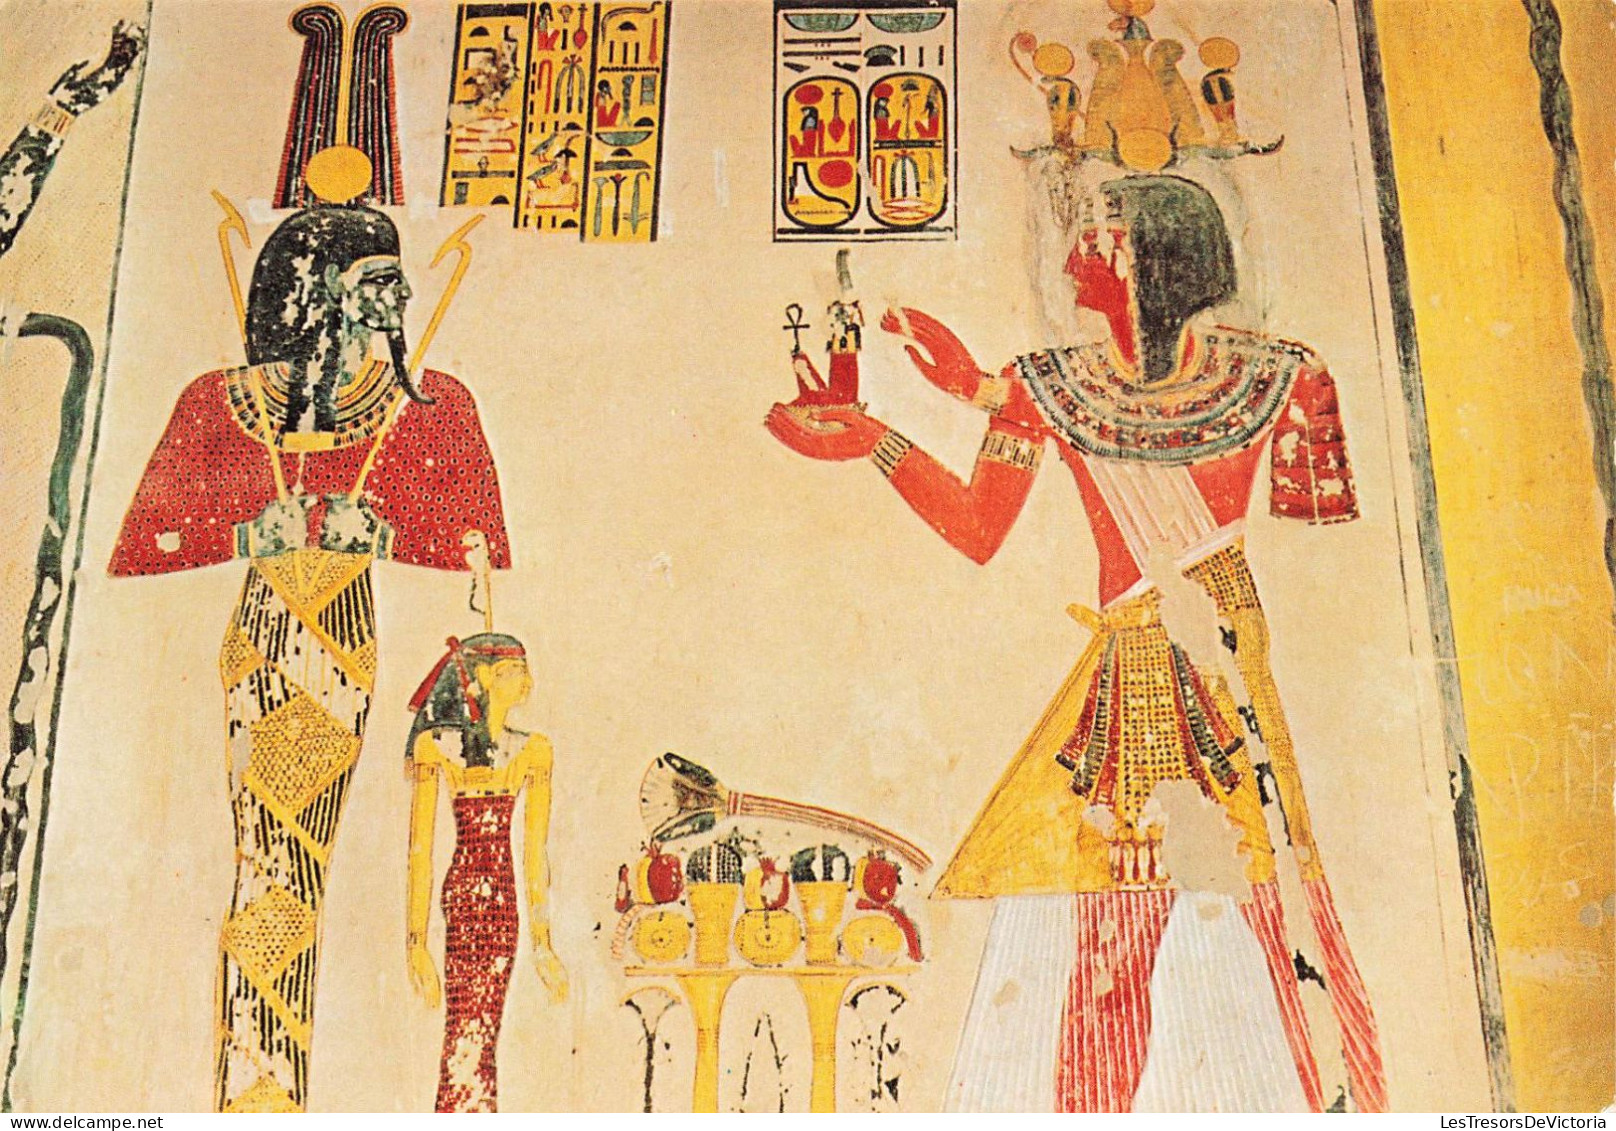 EGYPTE - Thèbes - Vallée Des Rois - Peintures Dans Le Tombeau De Ramses IX - Carte Postale - Other & Unclassified